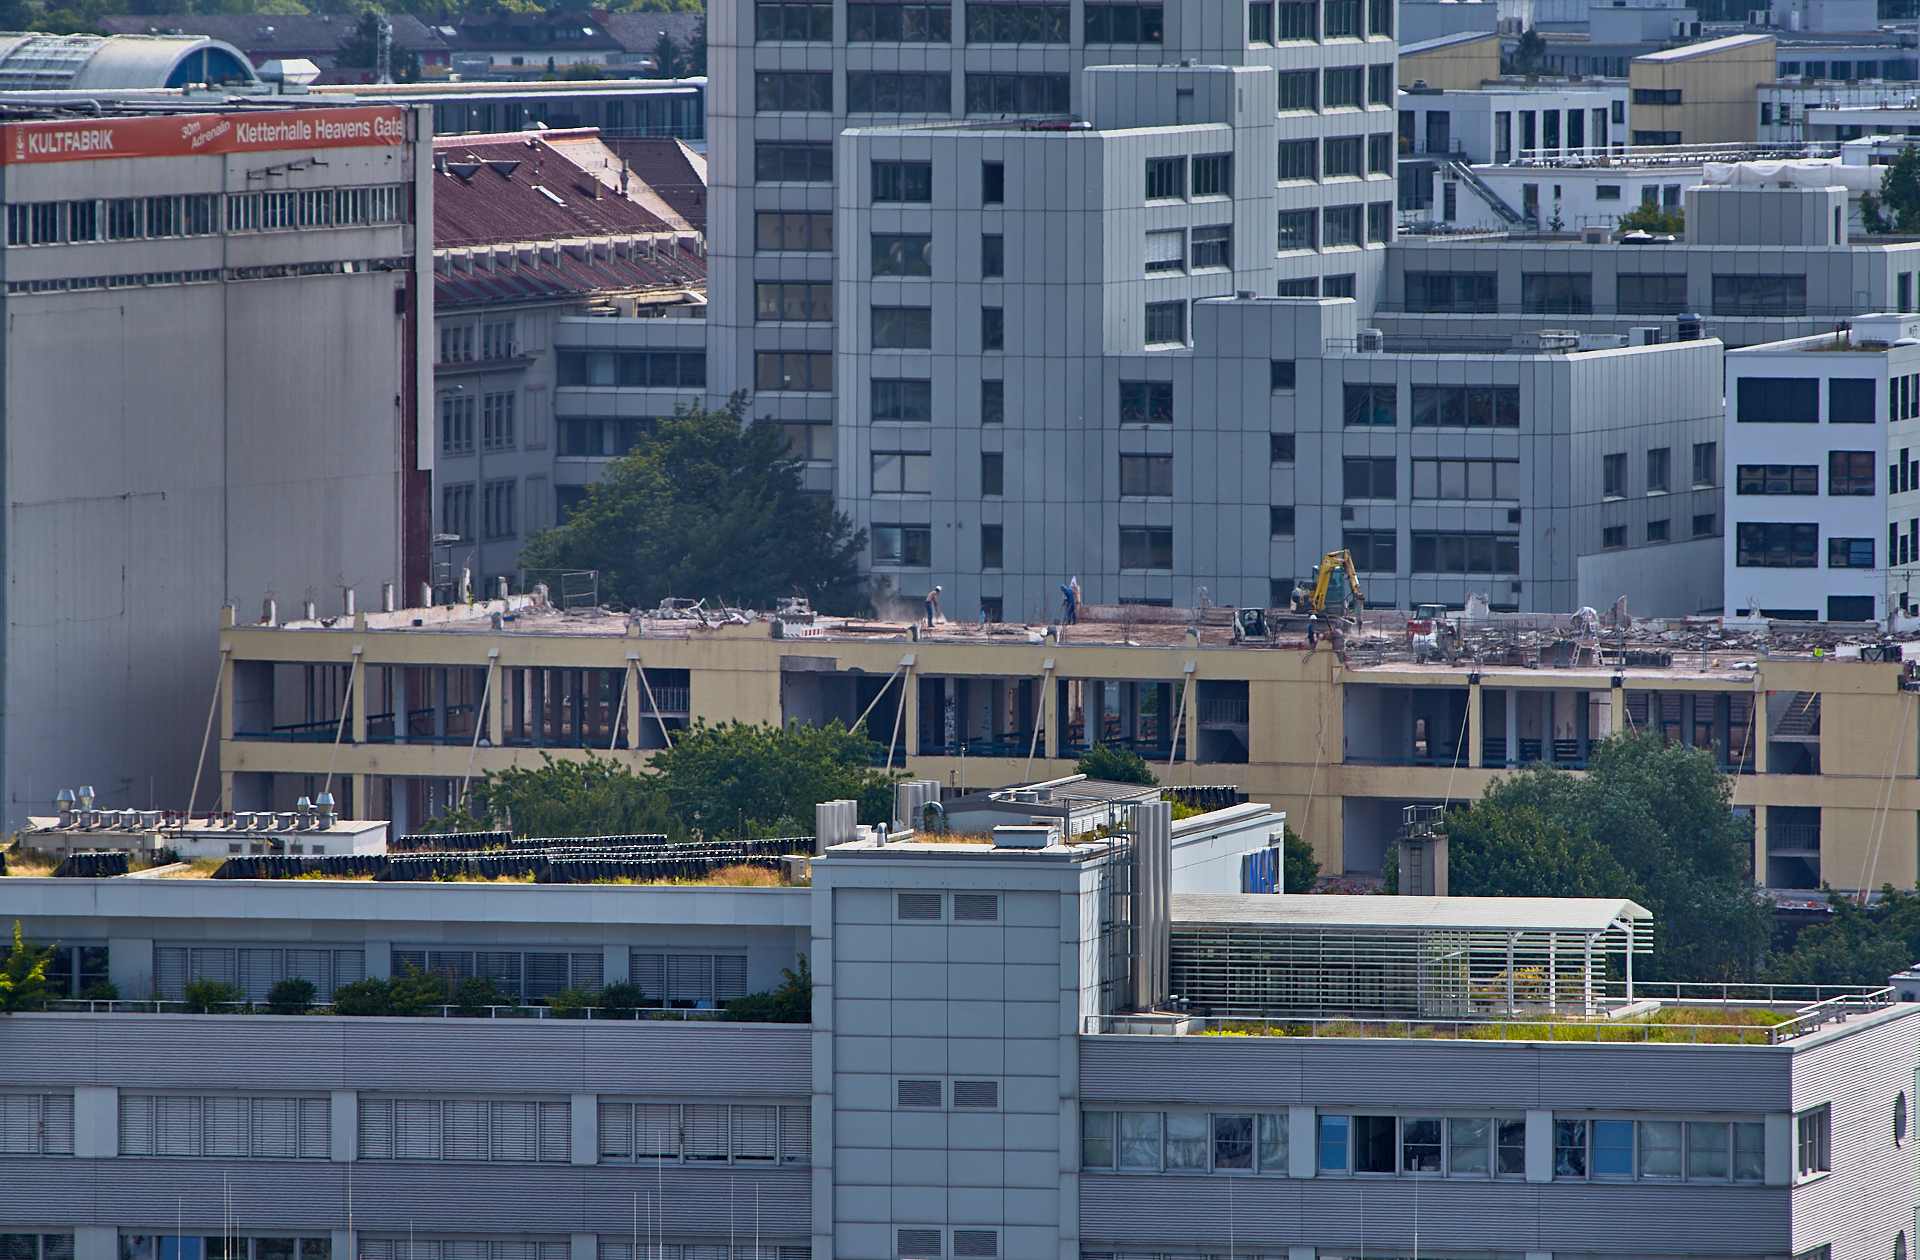 11.06.2014 - Dacharbeiten auf dem Werksgelände